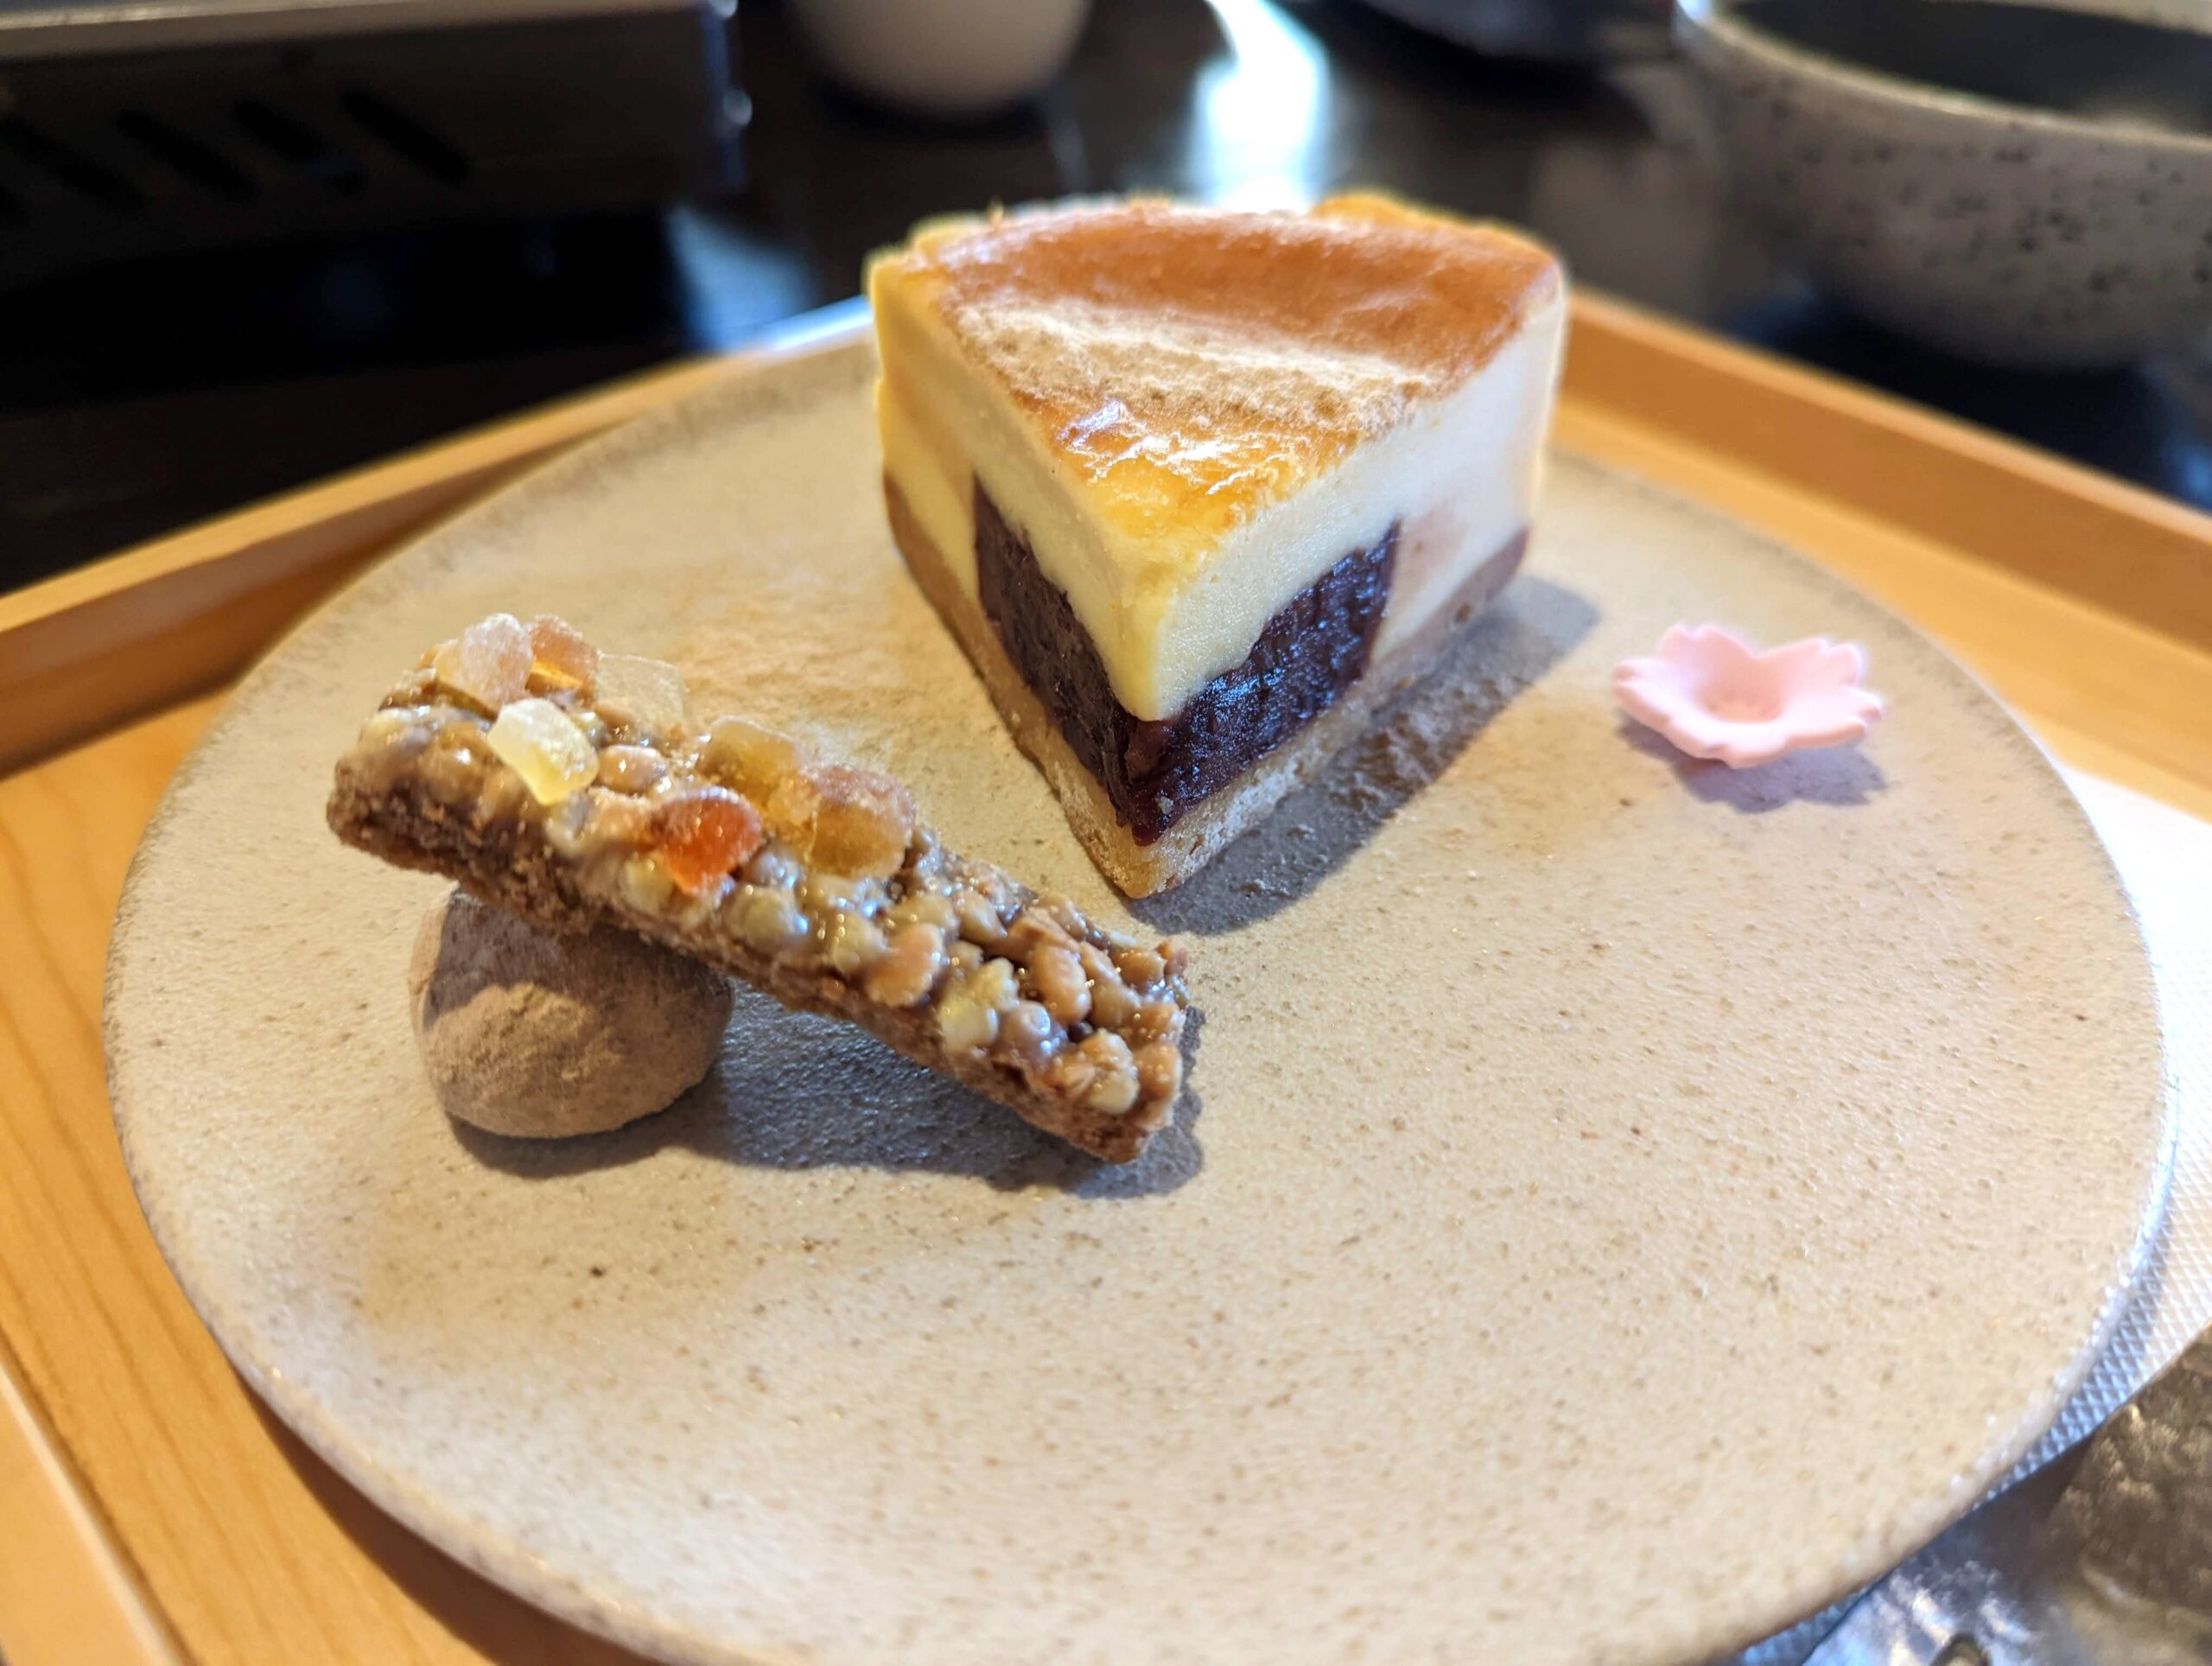 京都・豆腐料理 松ヶ枝の「sonoka そば茶あんチーズケーキ」 (2)